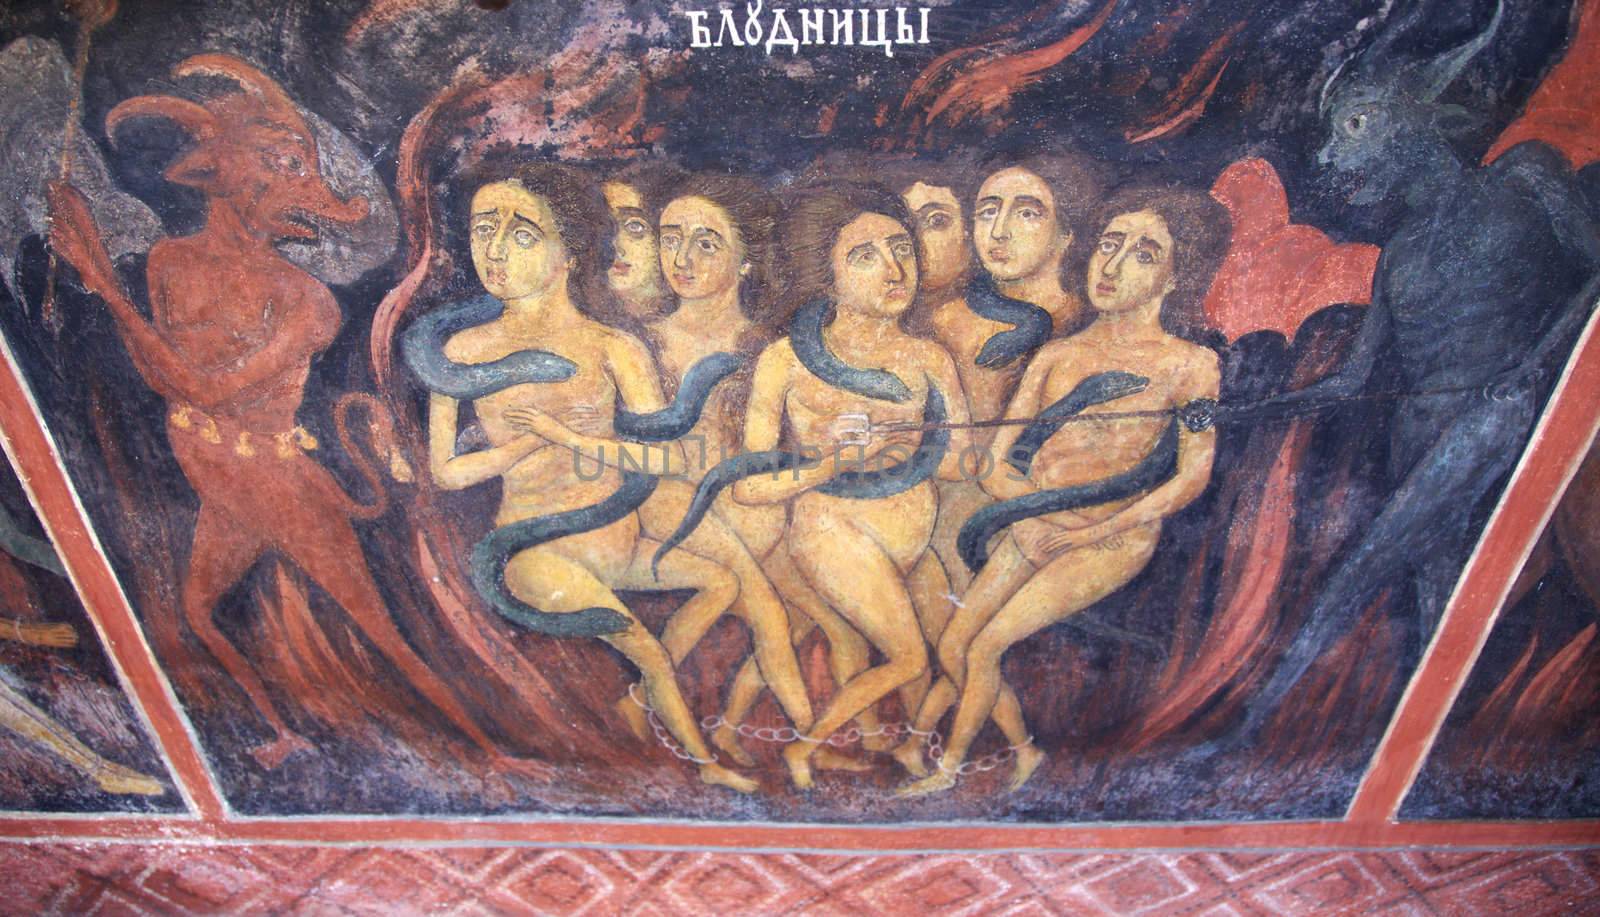 hell devils women scene fresco by vilevi